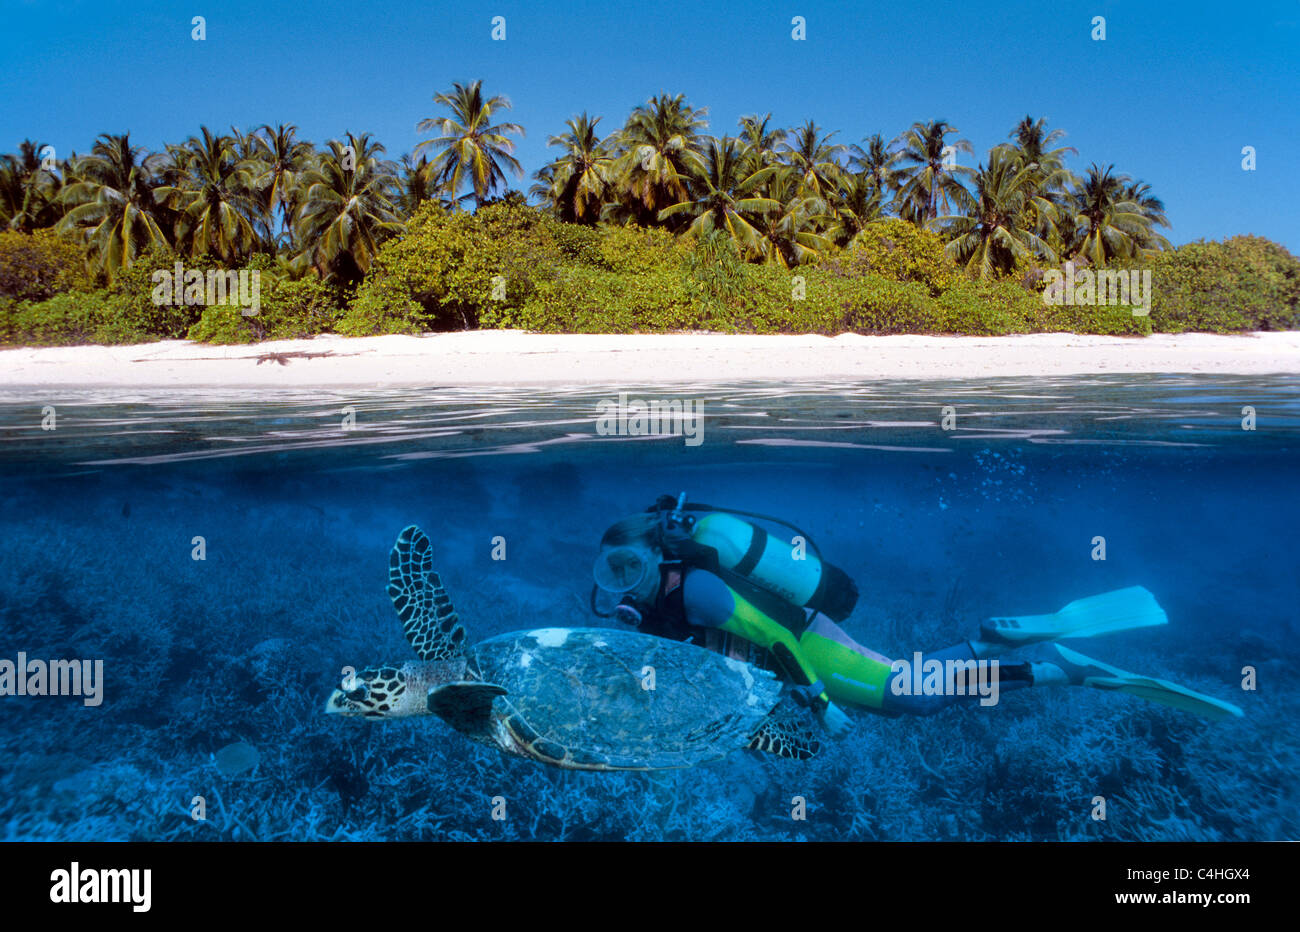 Über unter Wasser Split Image, Scuba Diver schwimmen mit turle Unechte Karettschildkröte (Caretta caretta), Malediven Inseln, Indischer Ozean Stockfoto